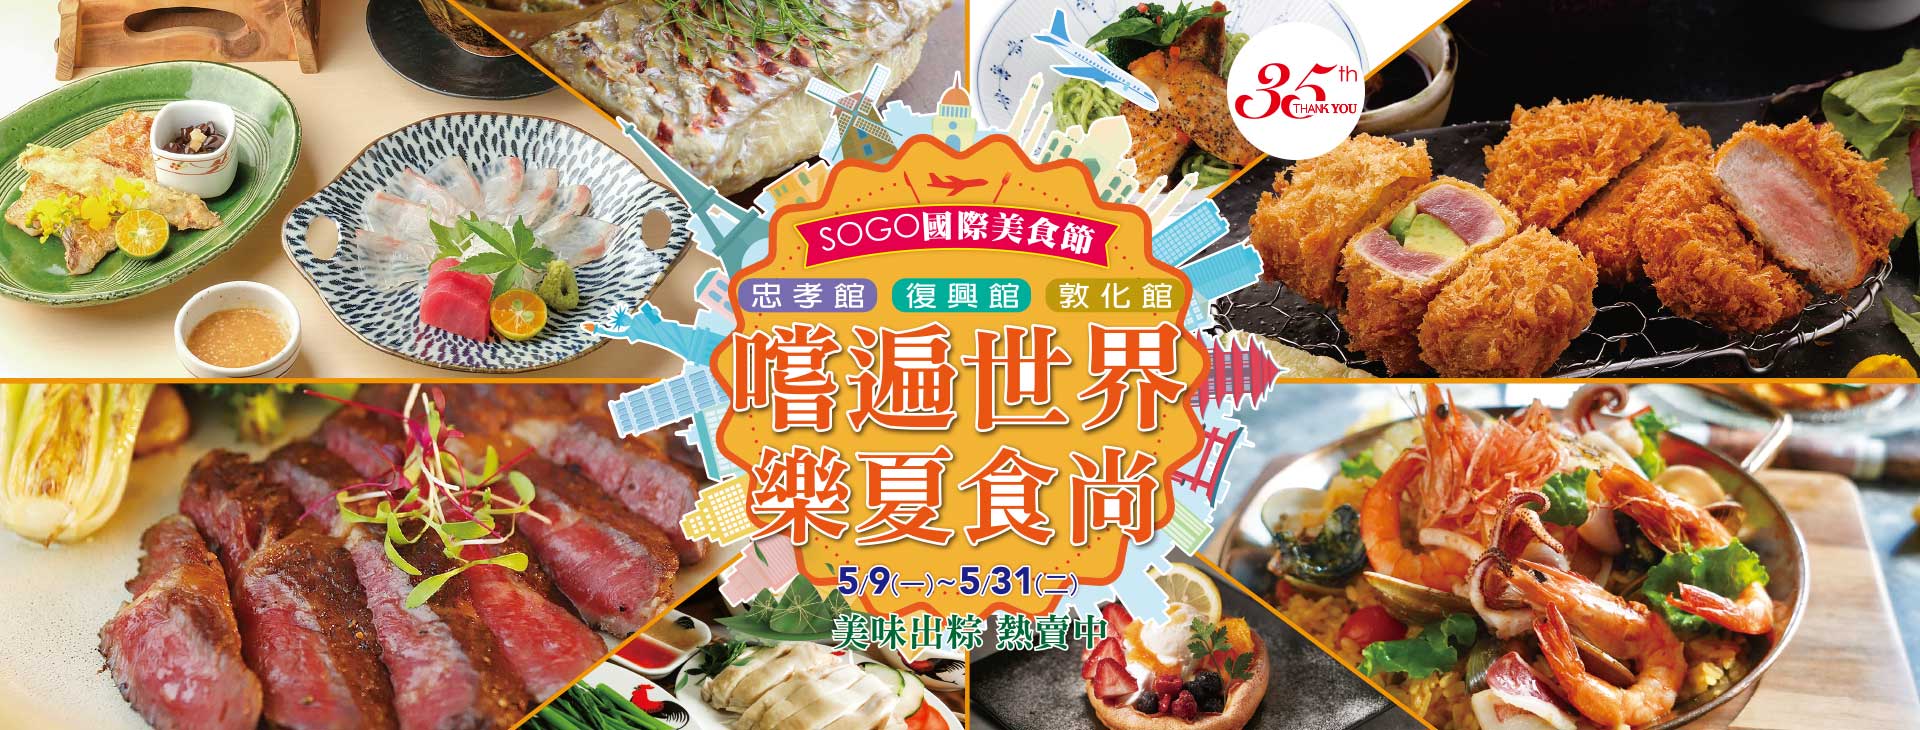 SOGO國際美食節 嚐遍世界 樂夏食尚